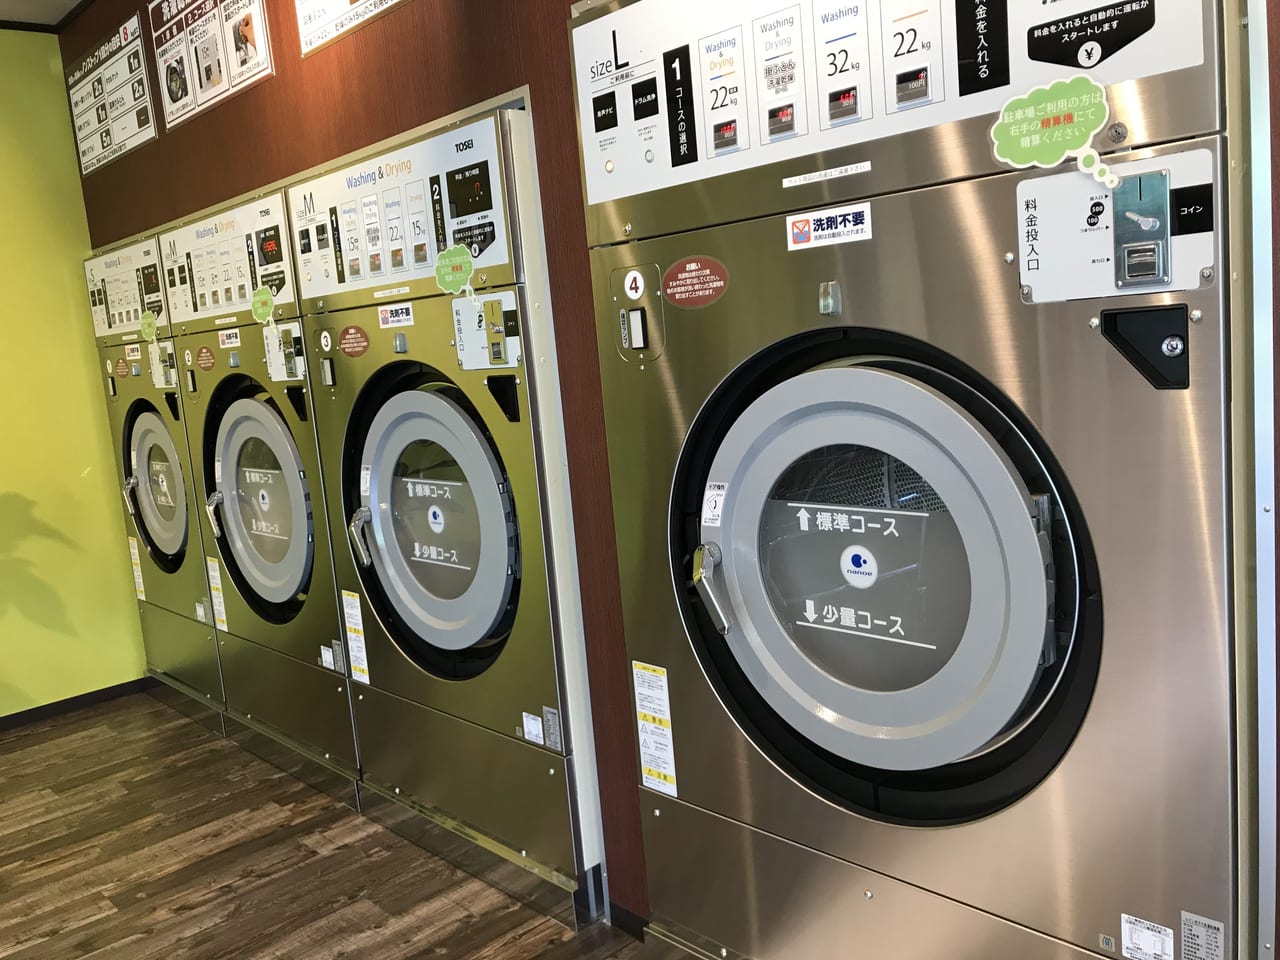 世田谷区 35坪の広 いコインランドリー Odakyu Laundry経堂店 が4月15日にオープンしました 駐車場も完備です 号外net 世田谷区